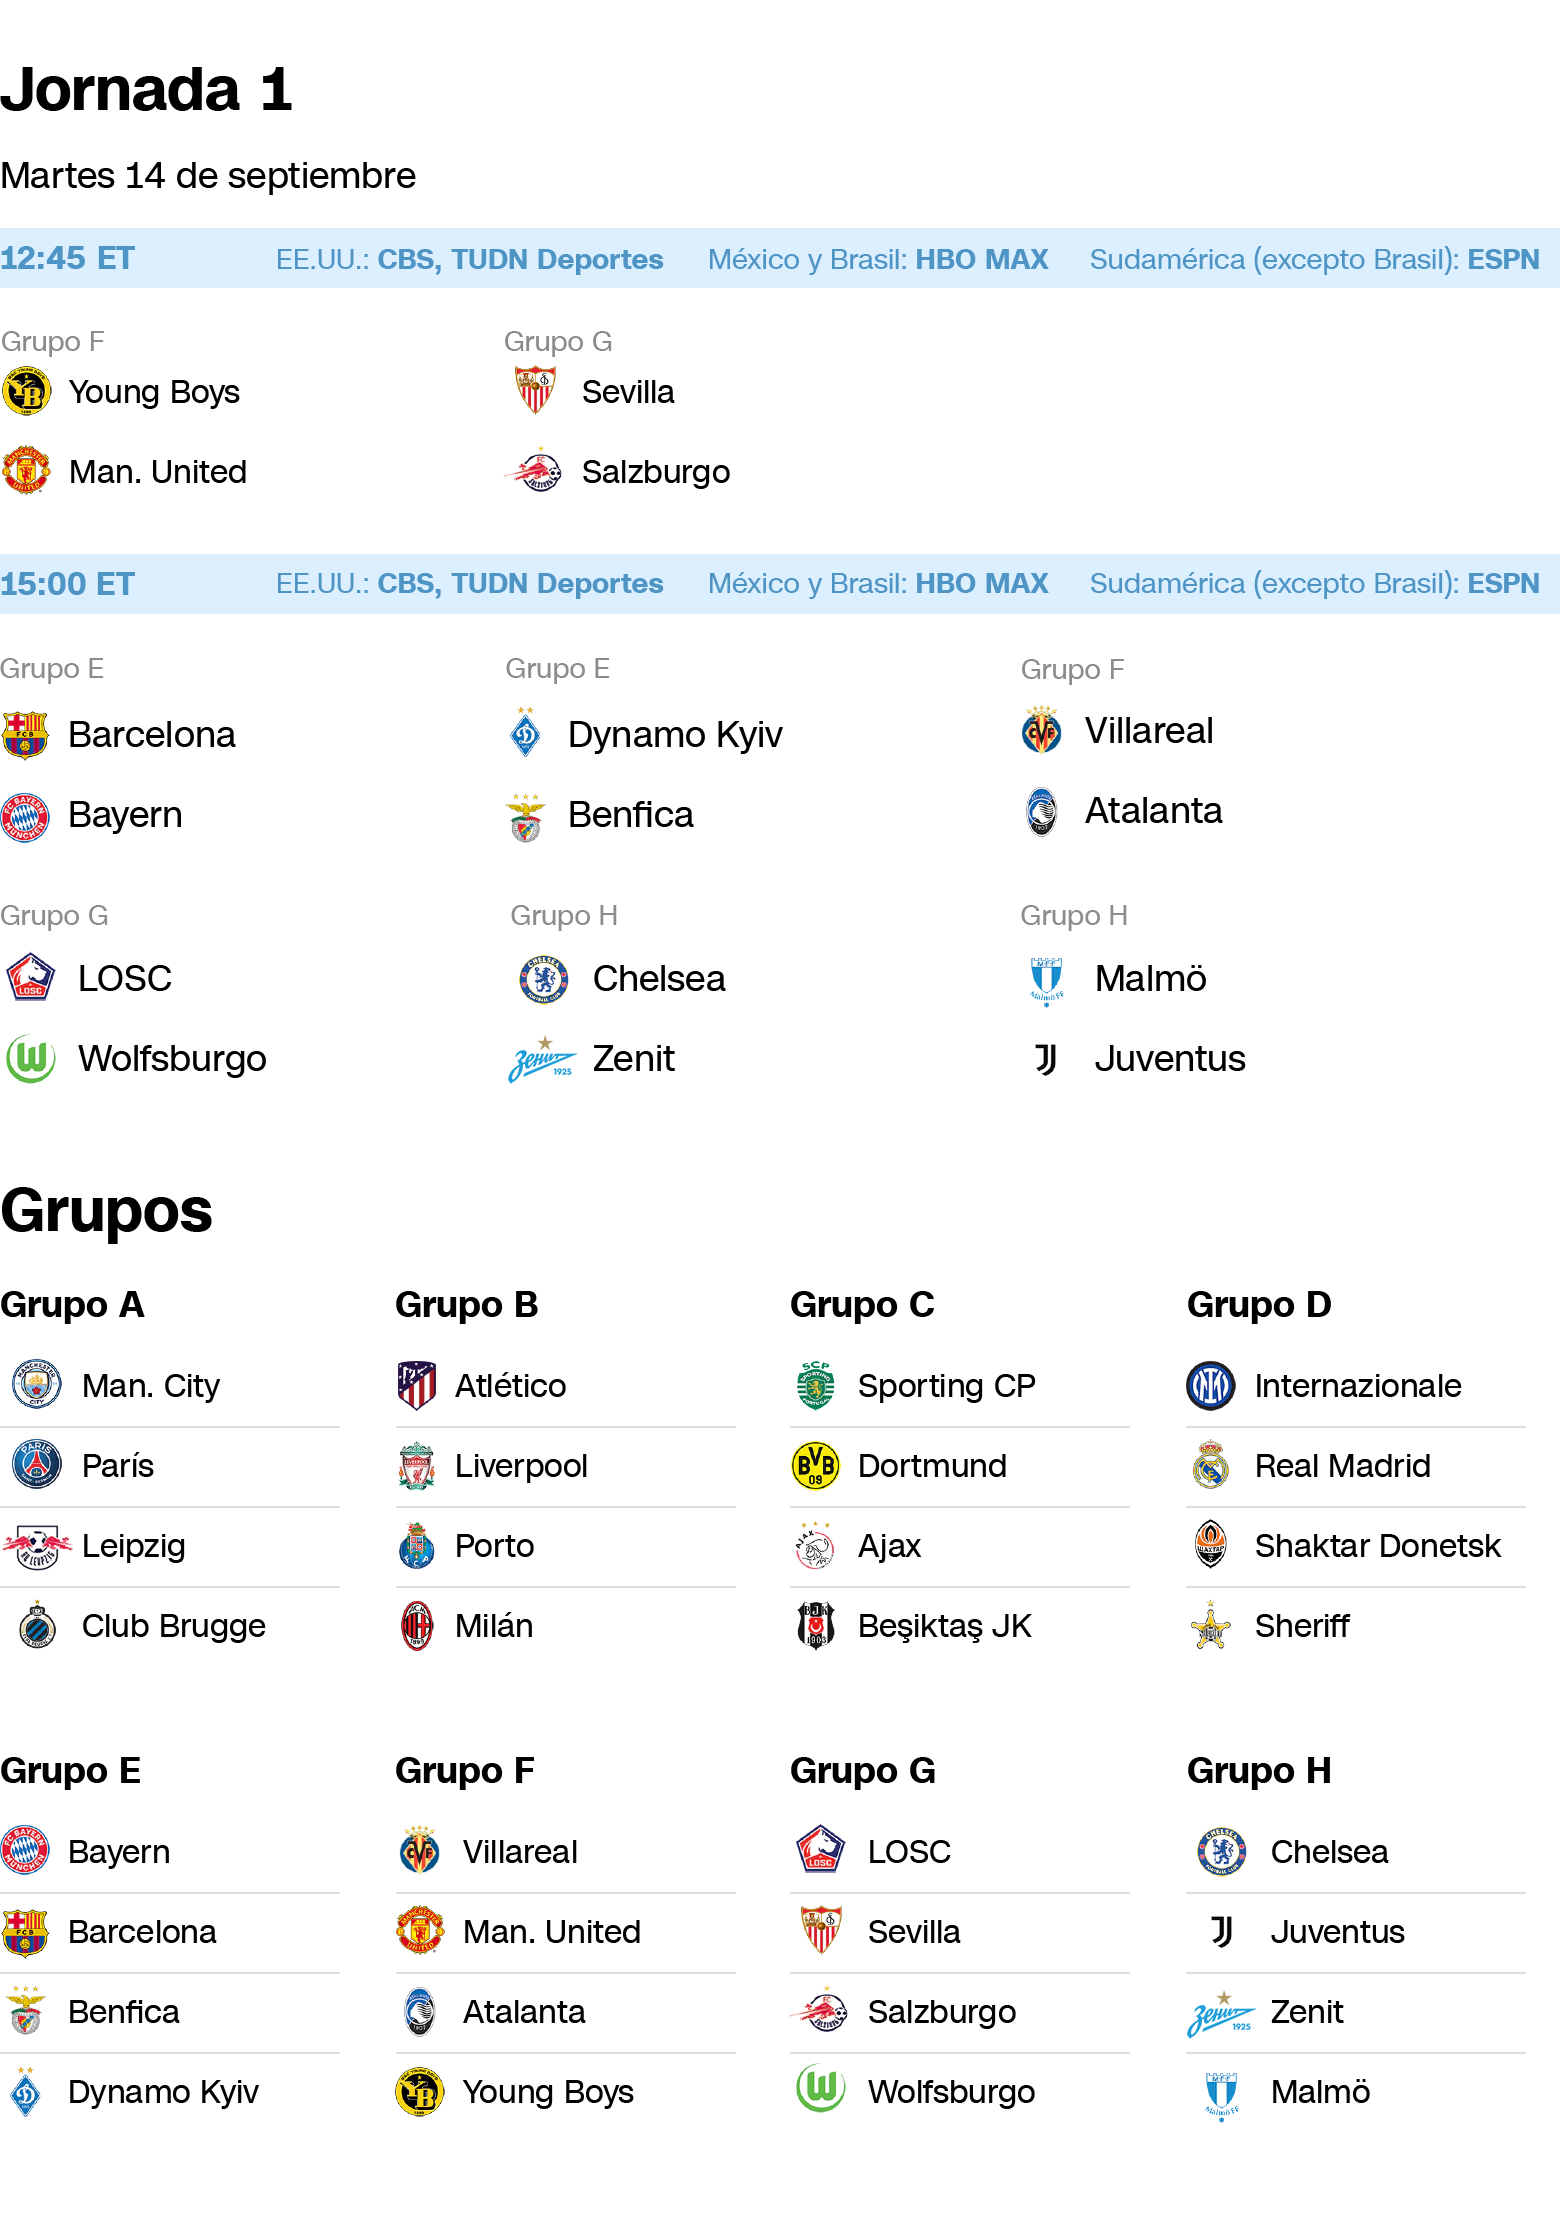 Champions League: comienza la de grupos 16 partidos en 2 días